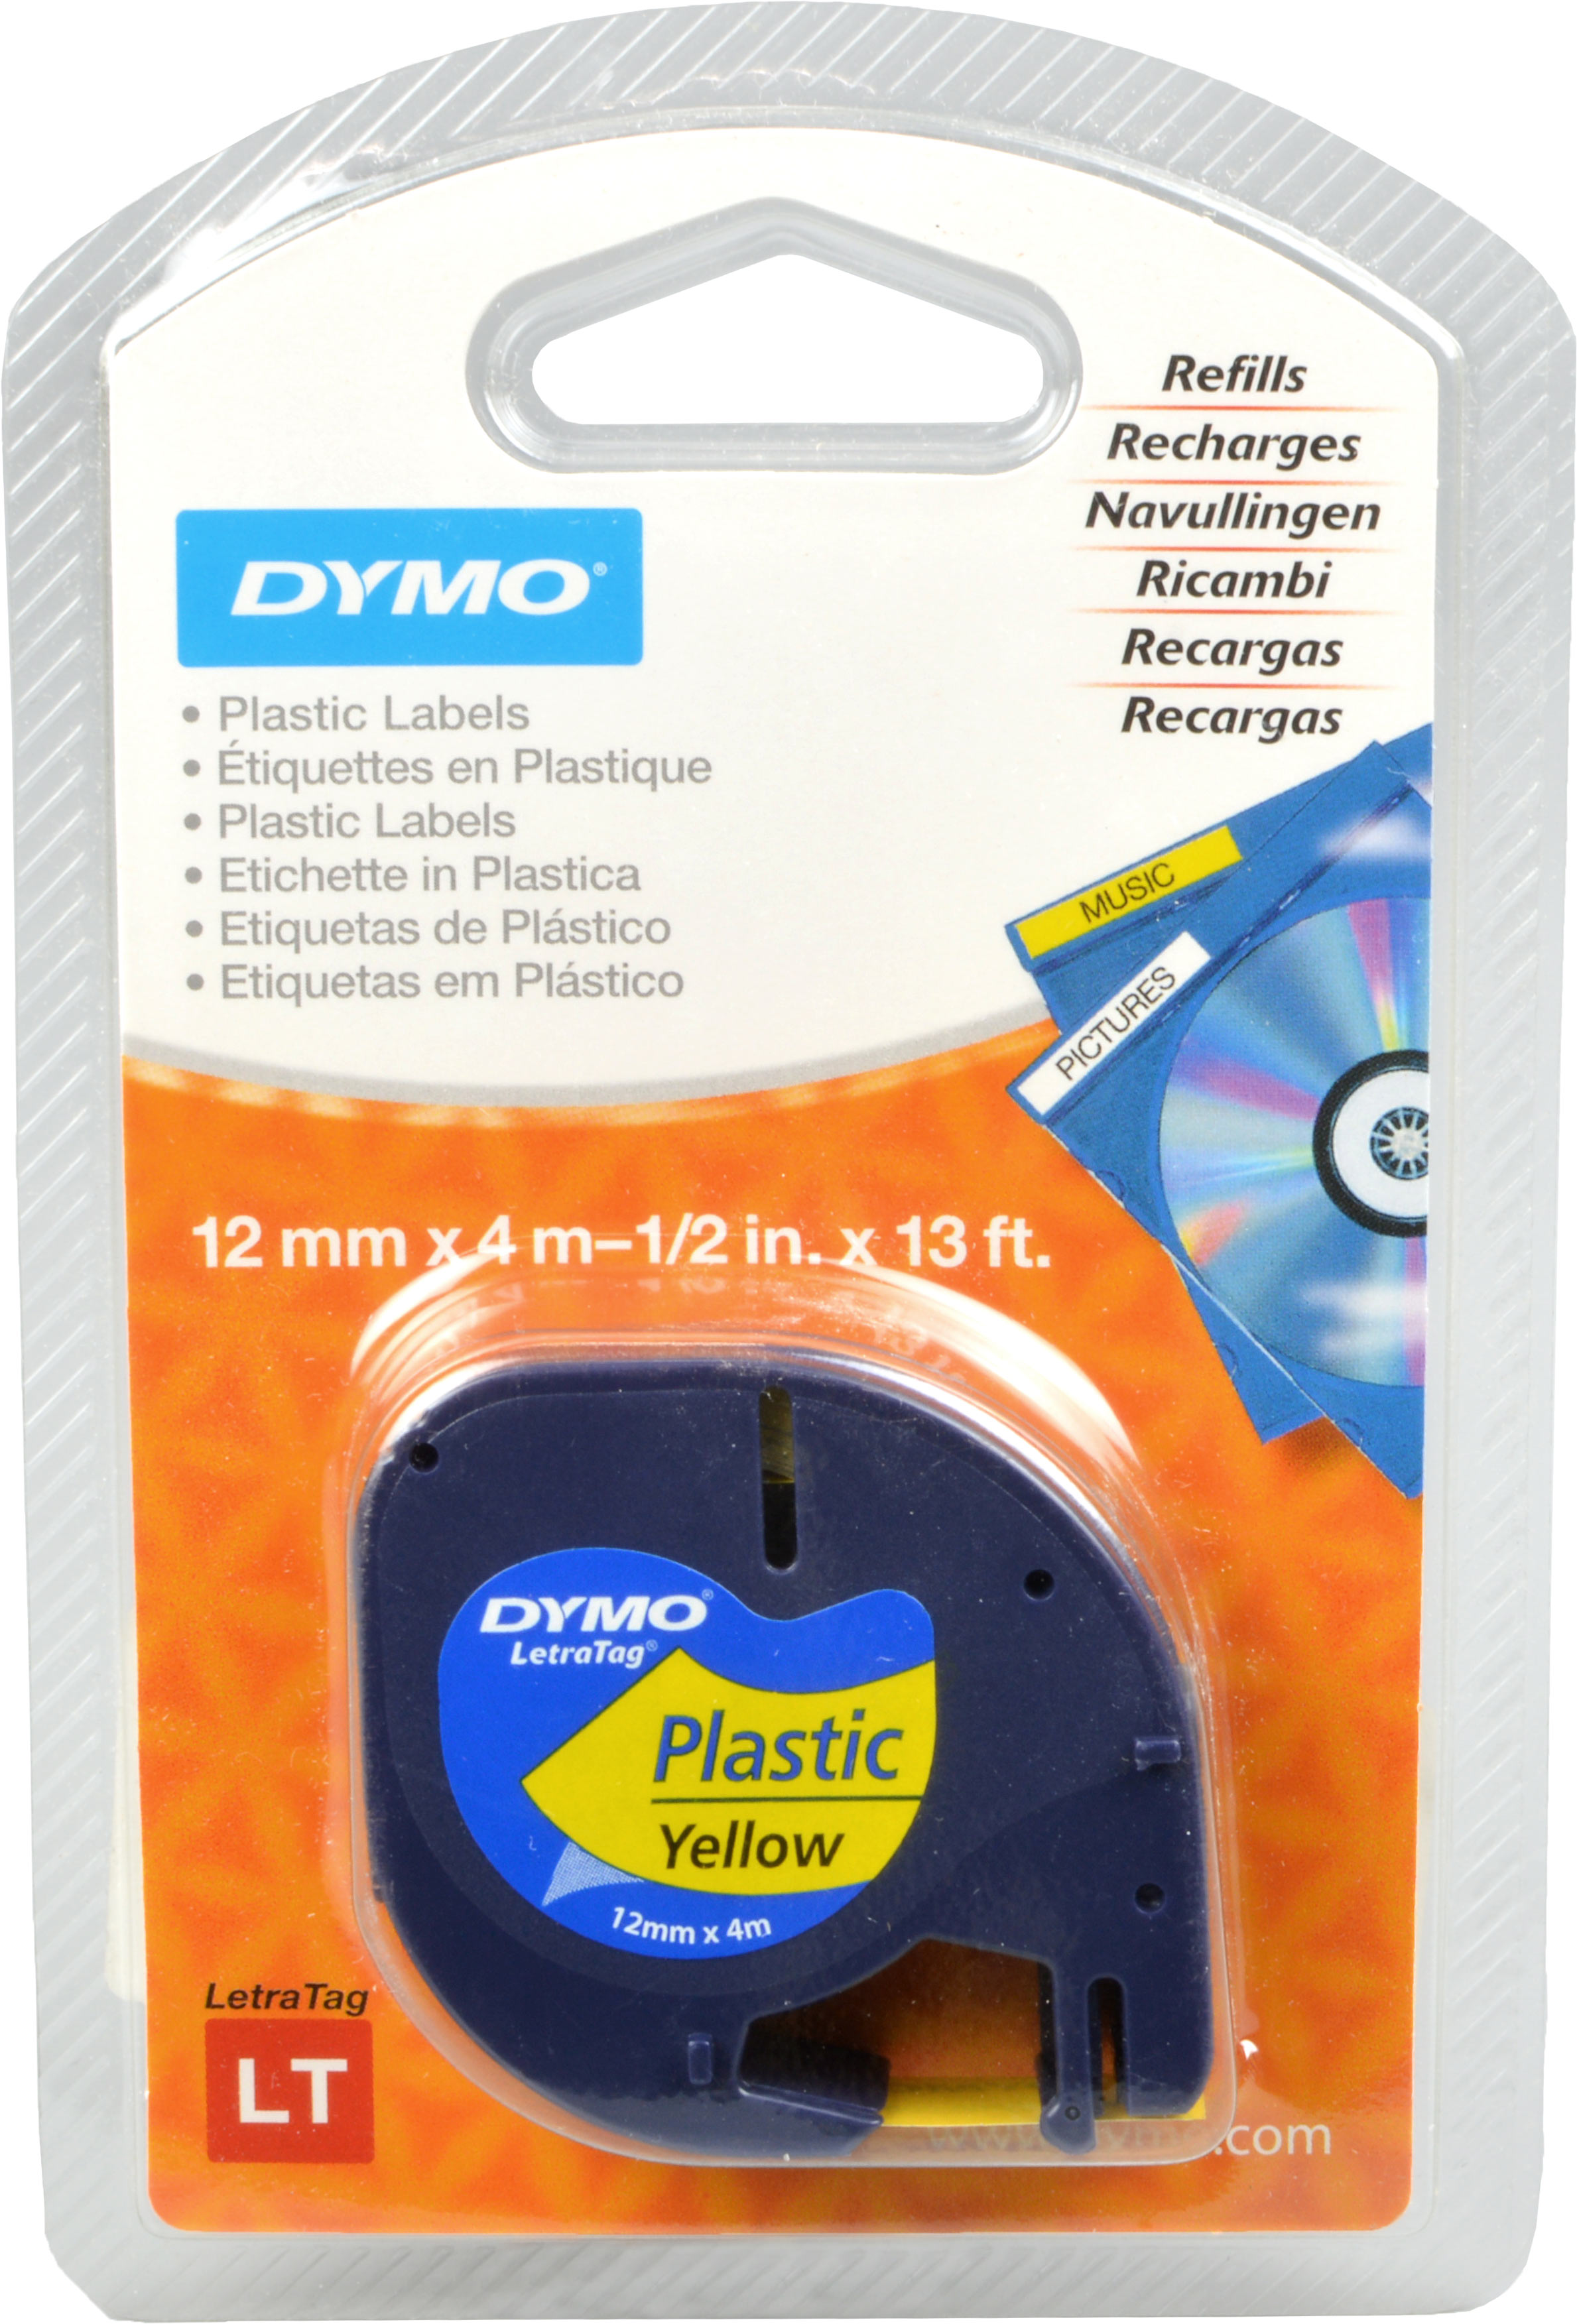 Dymo Label Refills S0721620  schwarz auf gelb  12mm x 4m